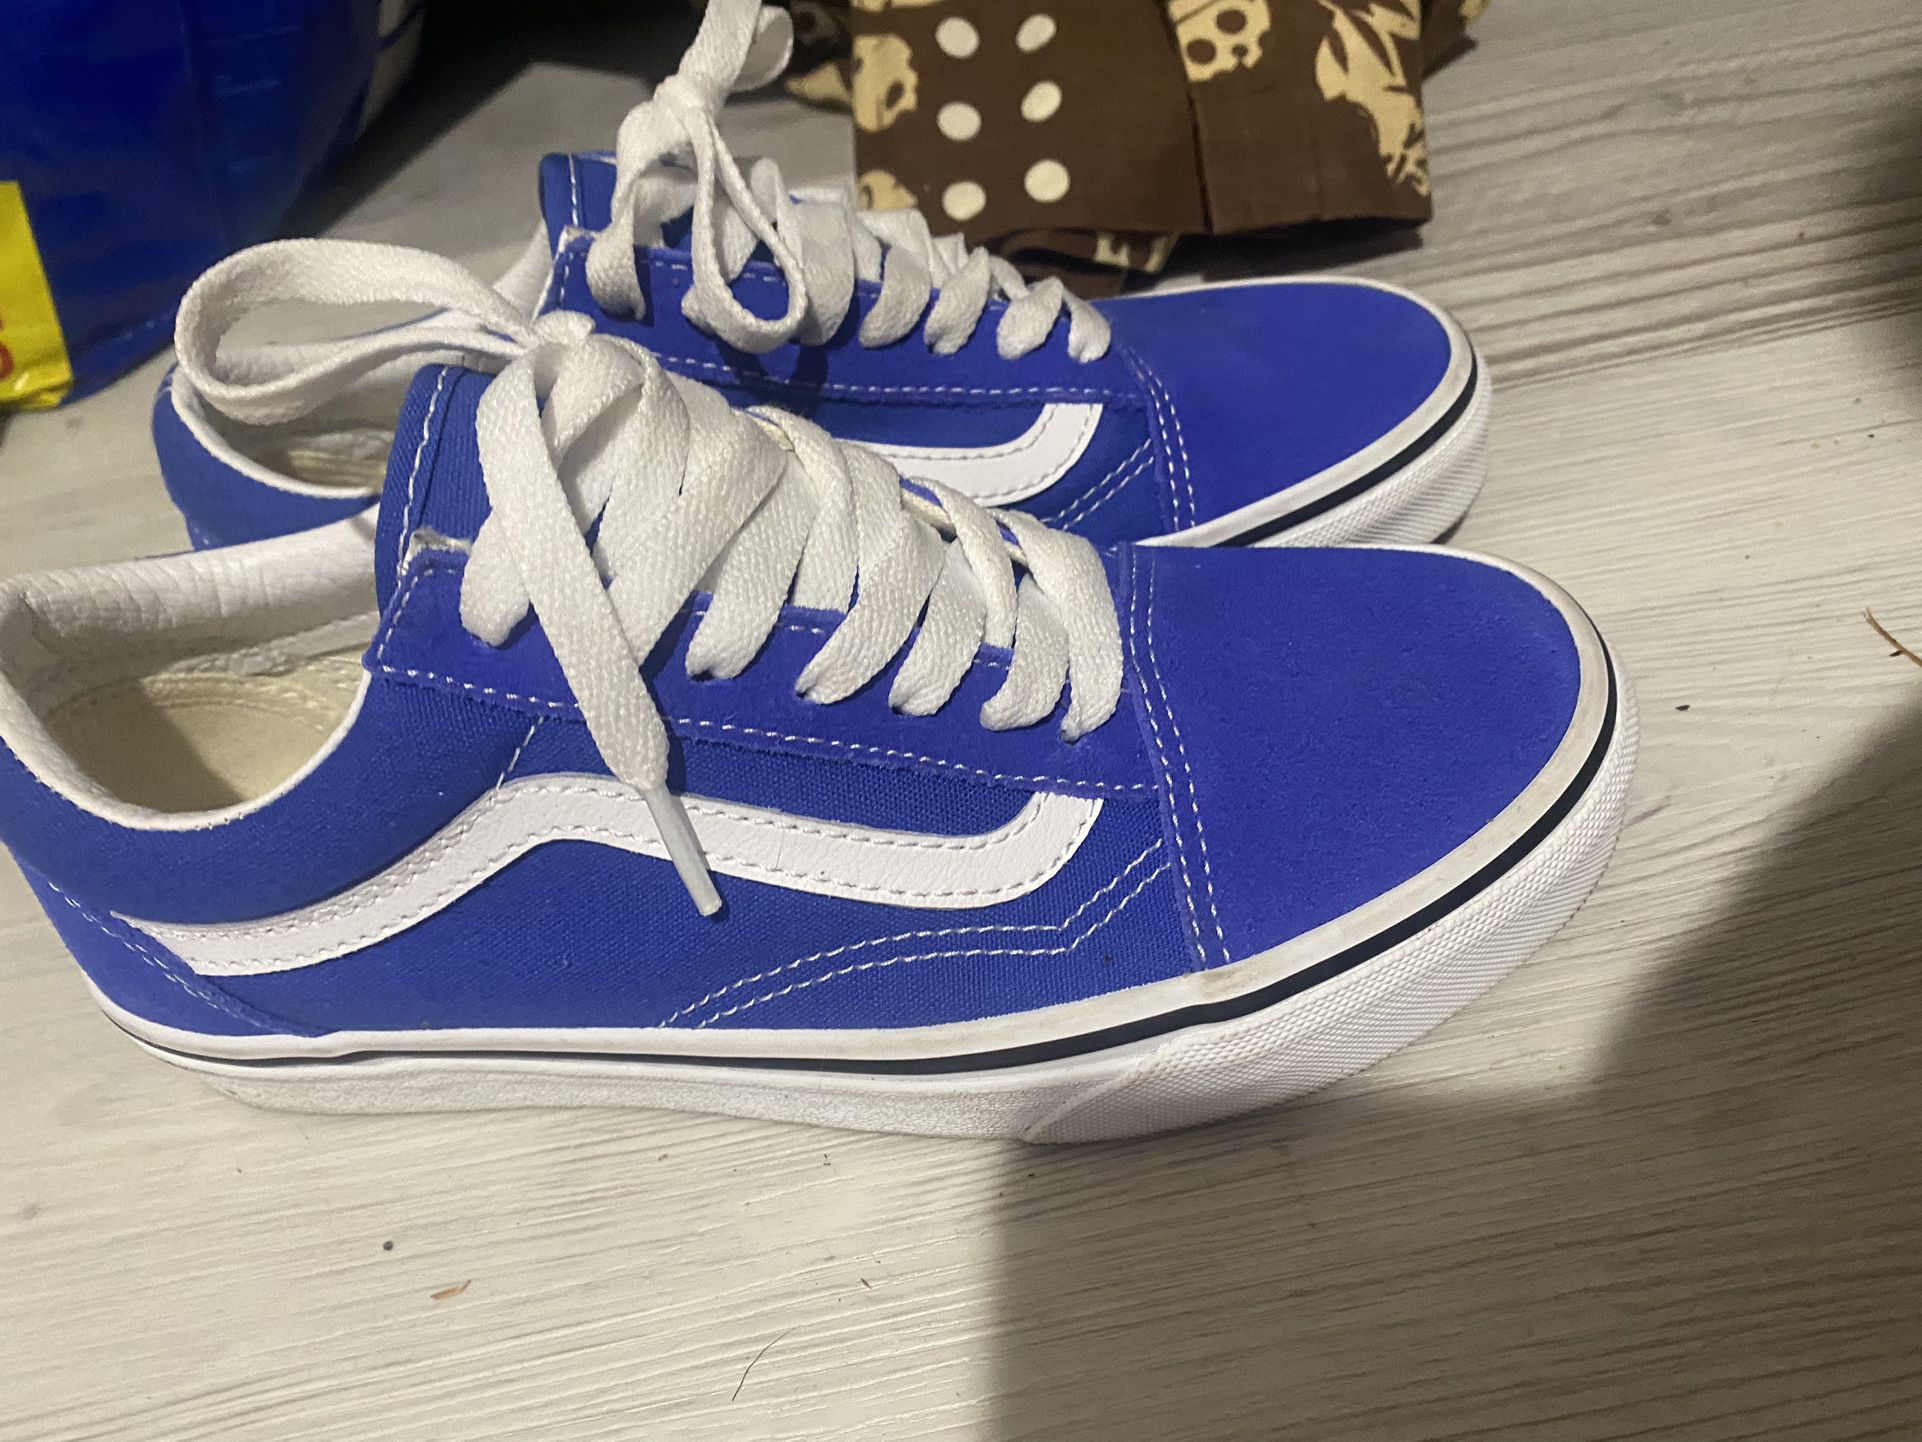 Blue Vans Shoes